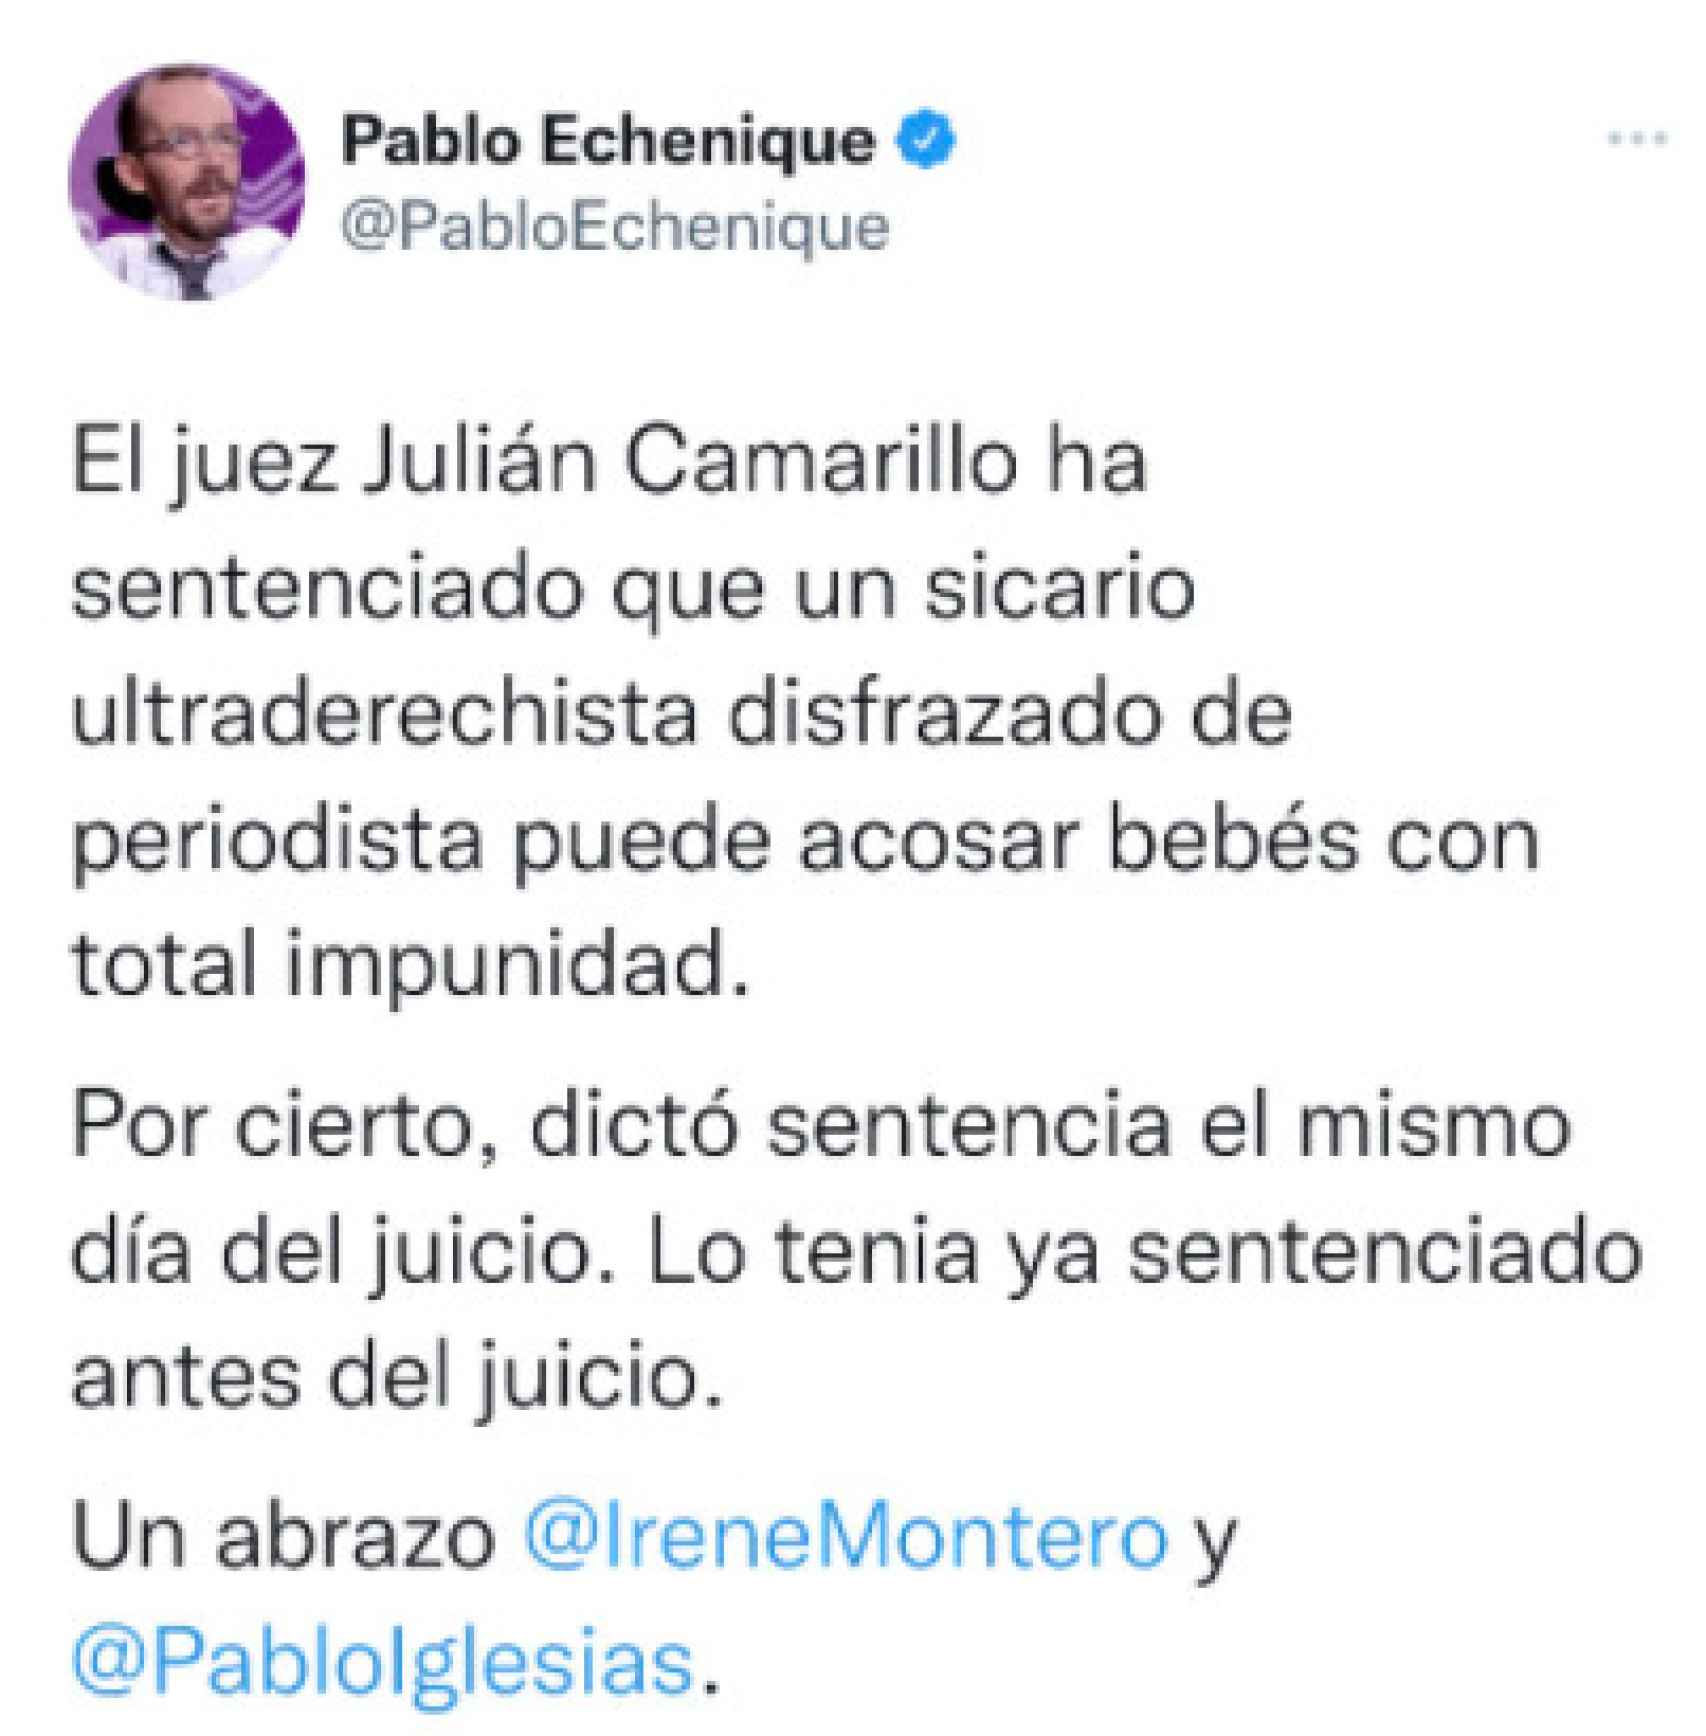 Tuit en el que Echenique confunde la calle Julián Camarillo con el nombre del juez.